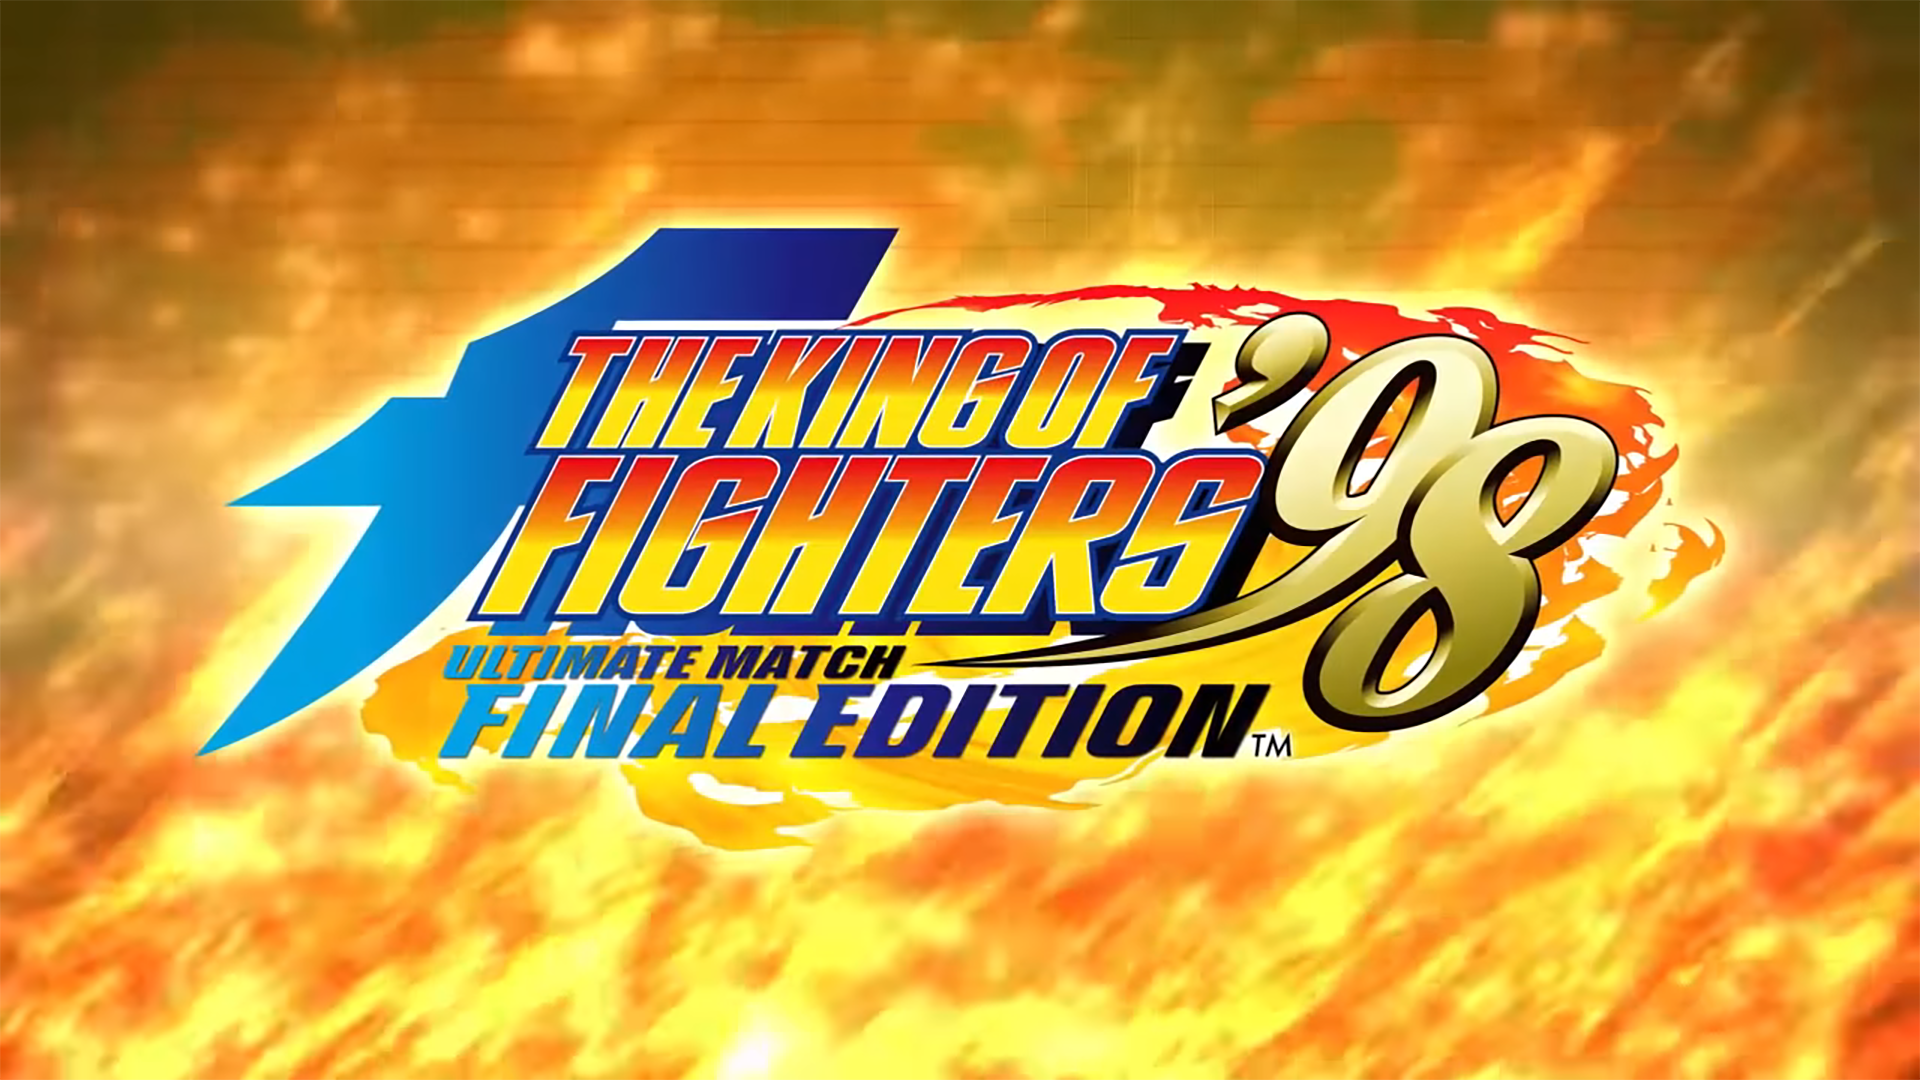 The King of Fighters ’98 Ultimate Match Final Edition เวอร์ชัน PS4 ถูกจัดเรตในยุโรปและไต้หวัน